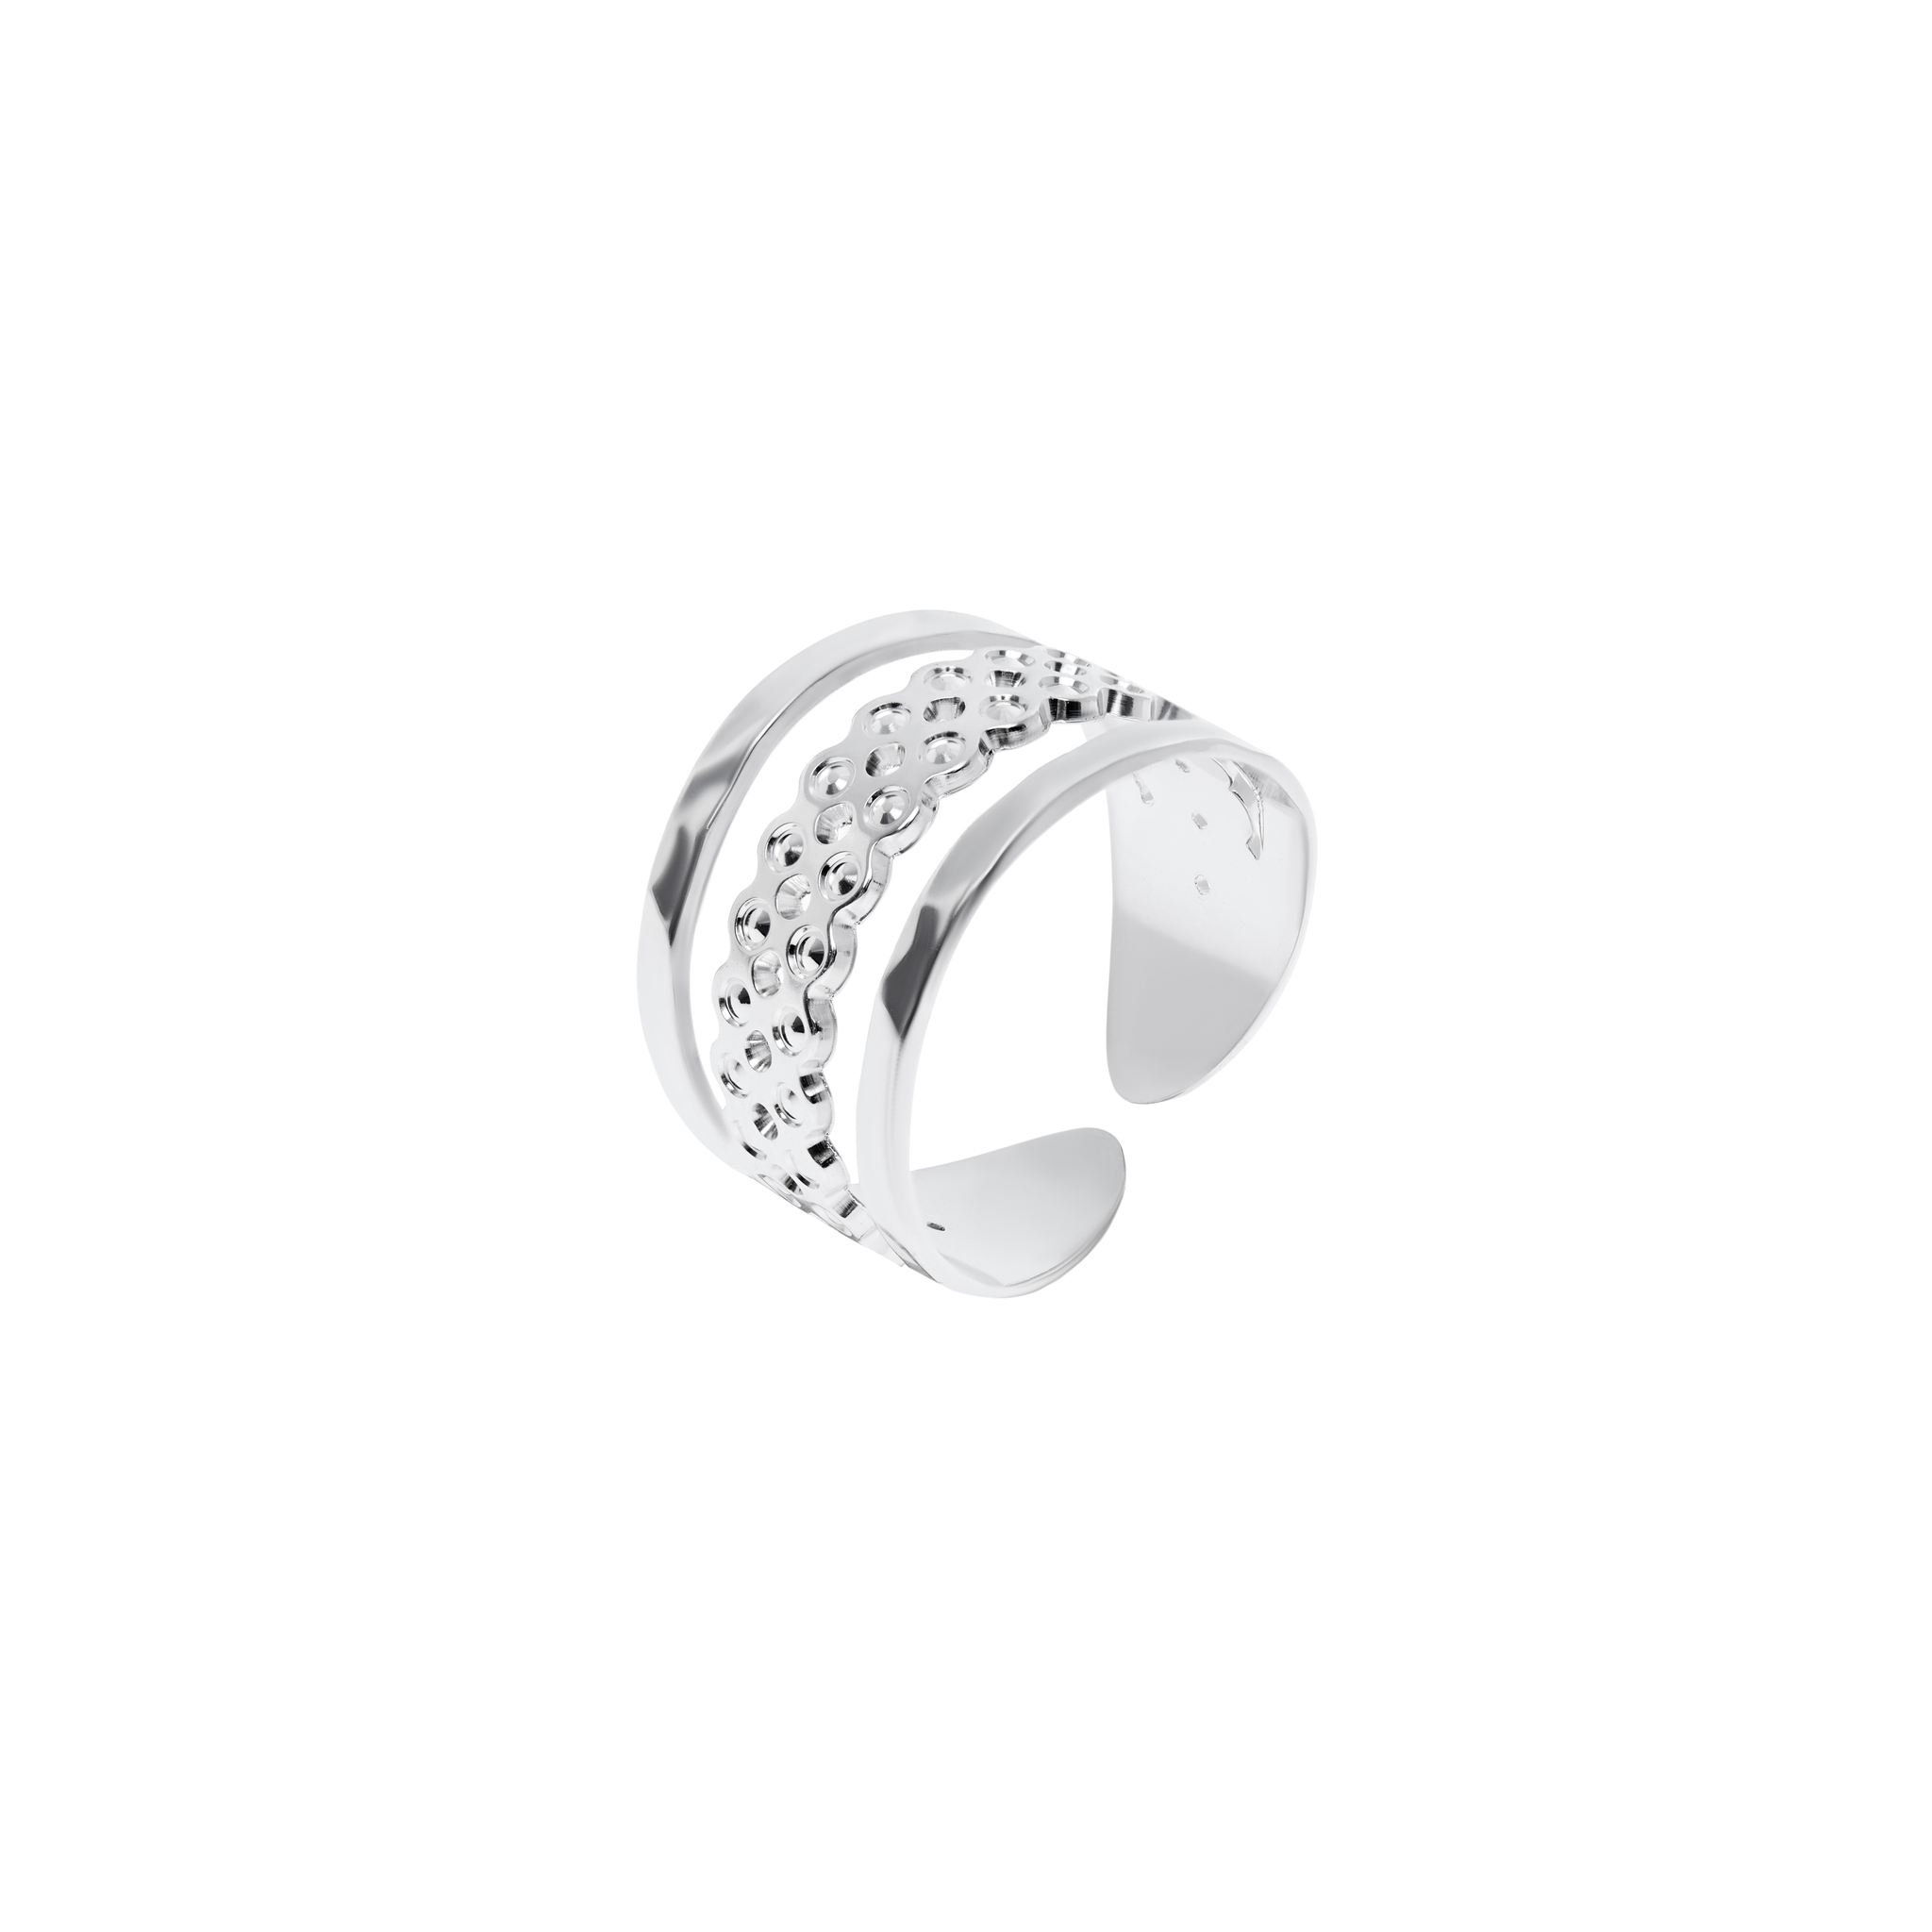 MYA BAY Кольцо Sydney Silver Ring mya bay незамкнутое кольцо с серебряным покрытием